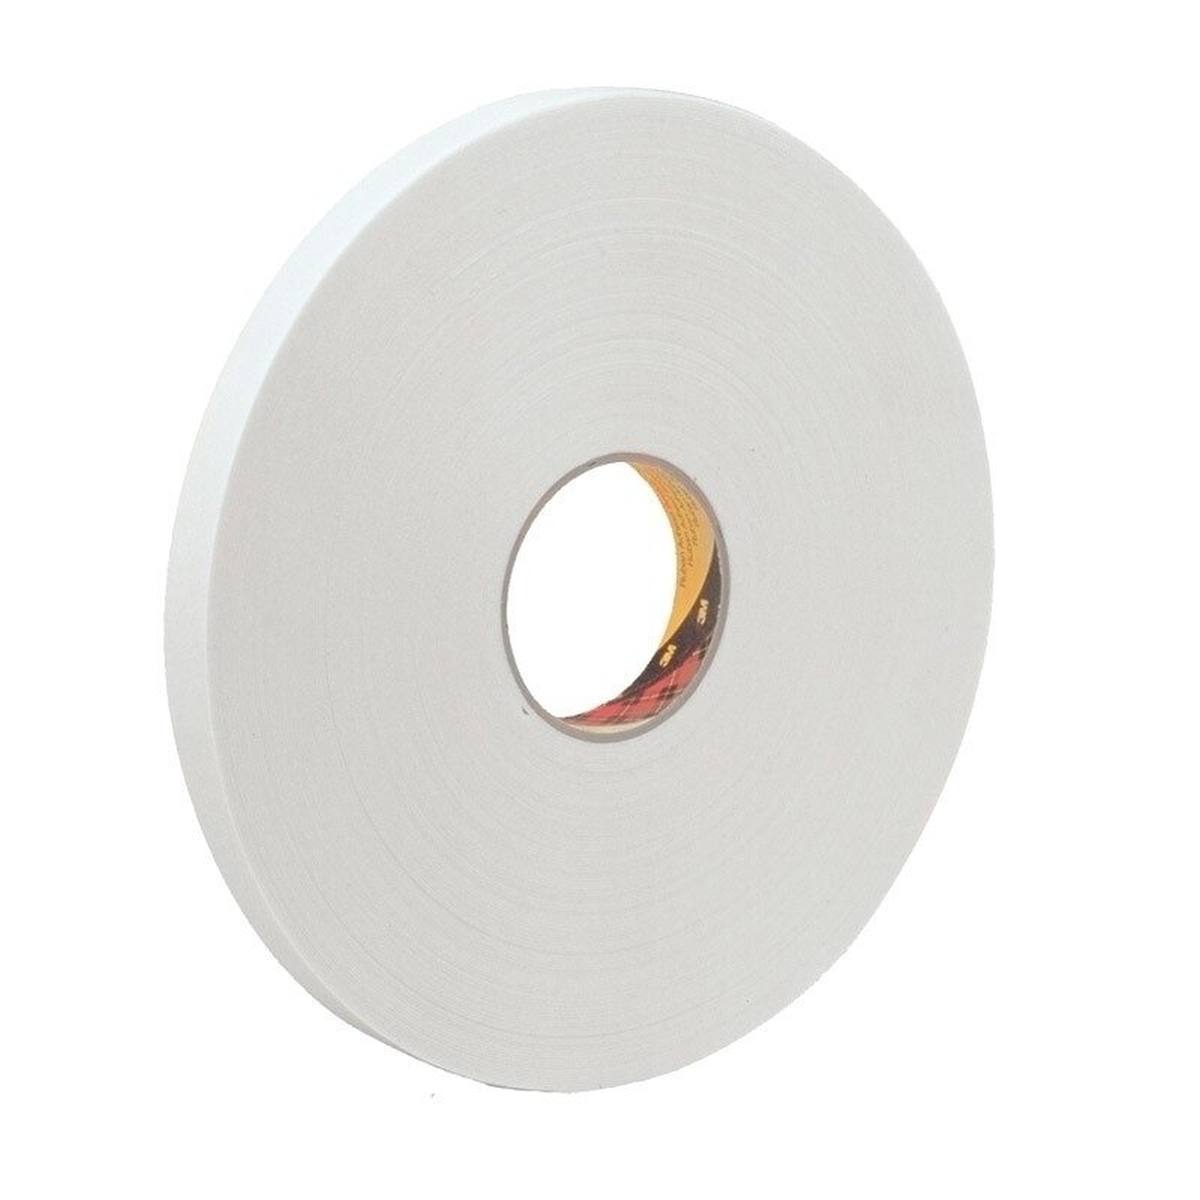 3M ruban adhésif mousse PE avec adhésif acrylique 9539, blanc, 15 mm x 66 m, 0,8 mm